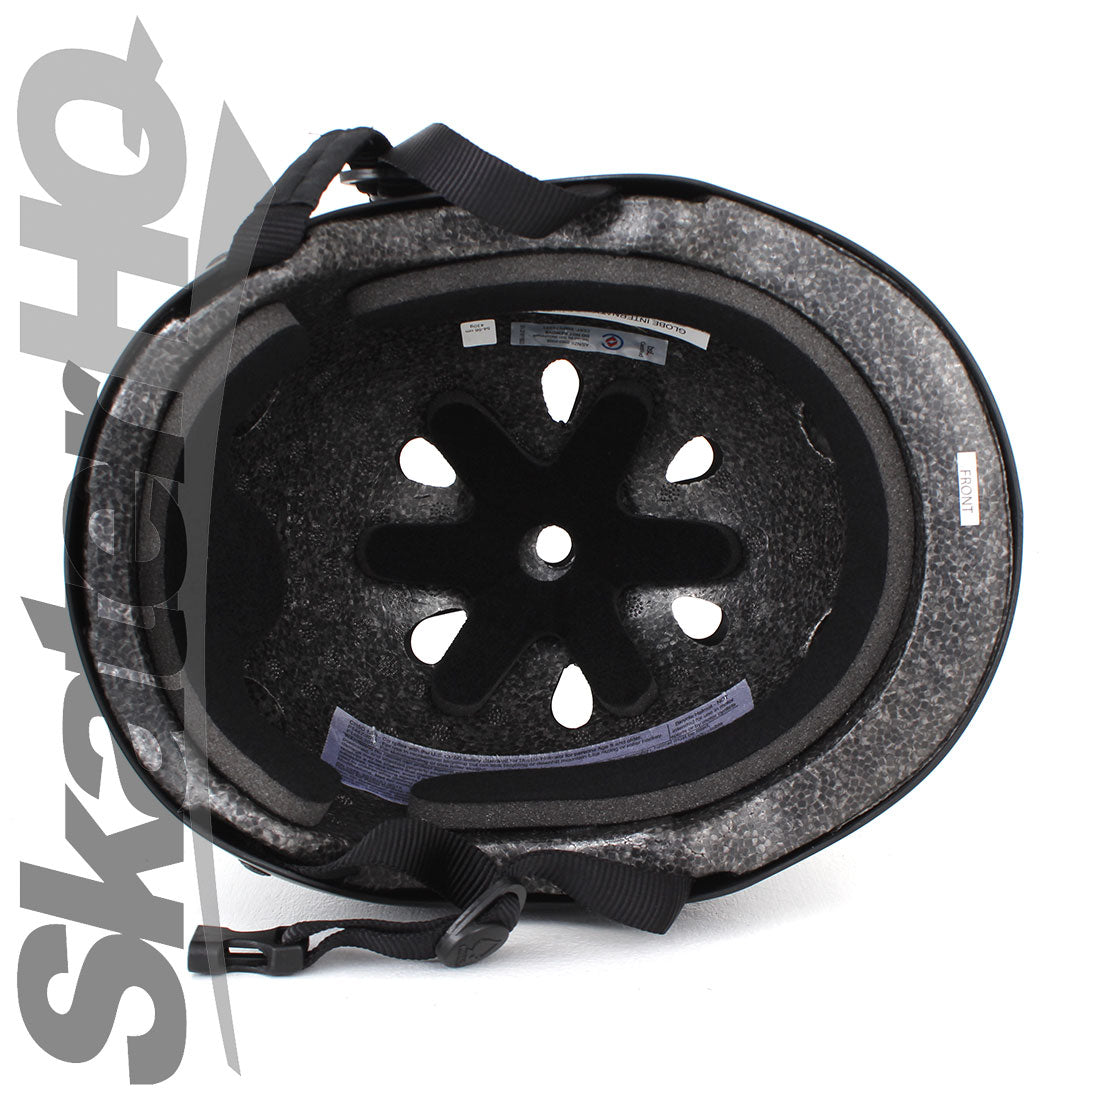 Pro-Tec Classic Cert Matte Black - XSmall Helmets